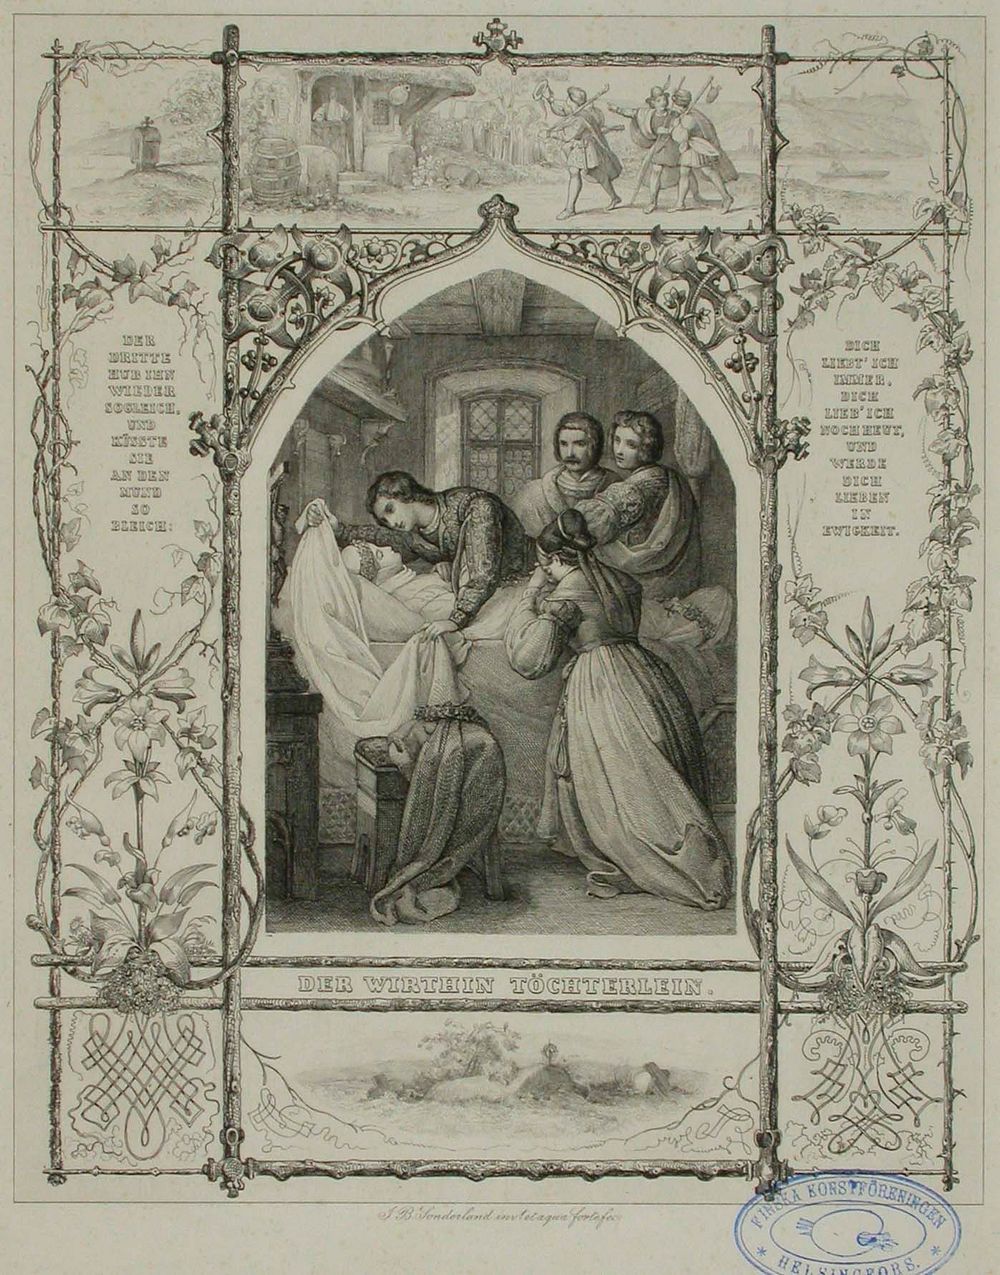 Runokuvitus, der wirthin töchterlein, 1838 - 1844